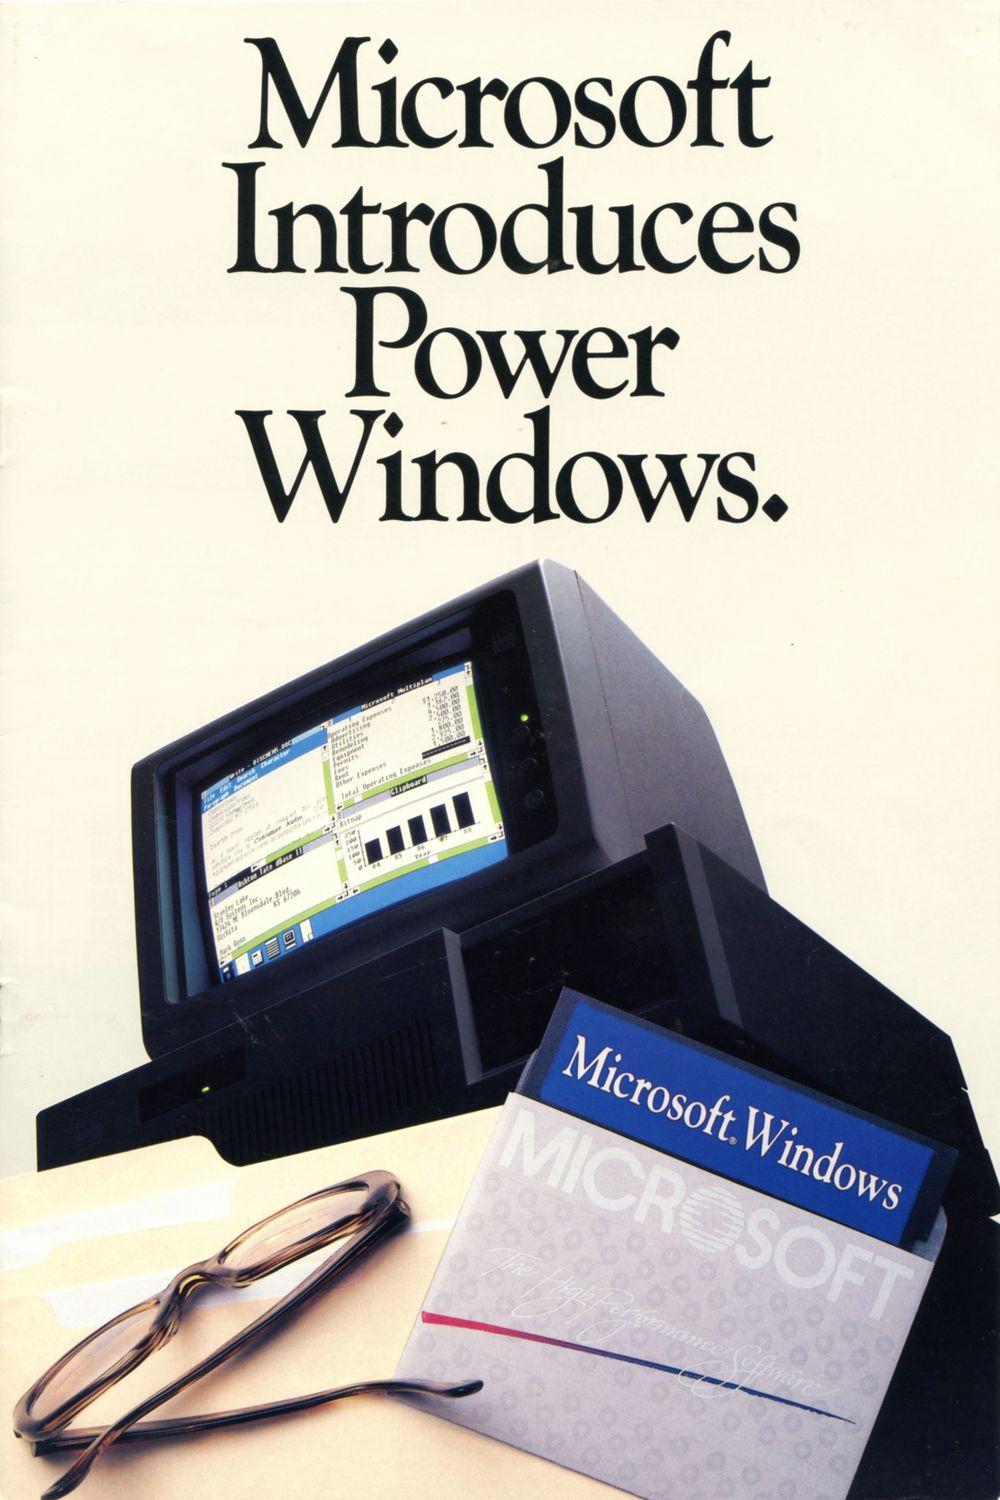 Brosjyre for Microsoft Windows 1.0, trykket i januar 1986.